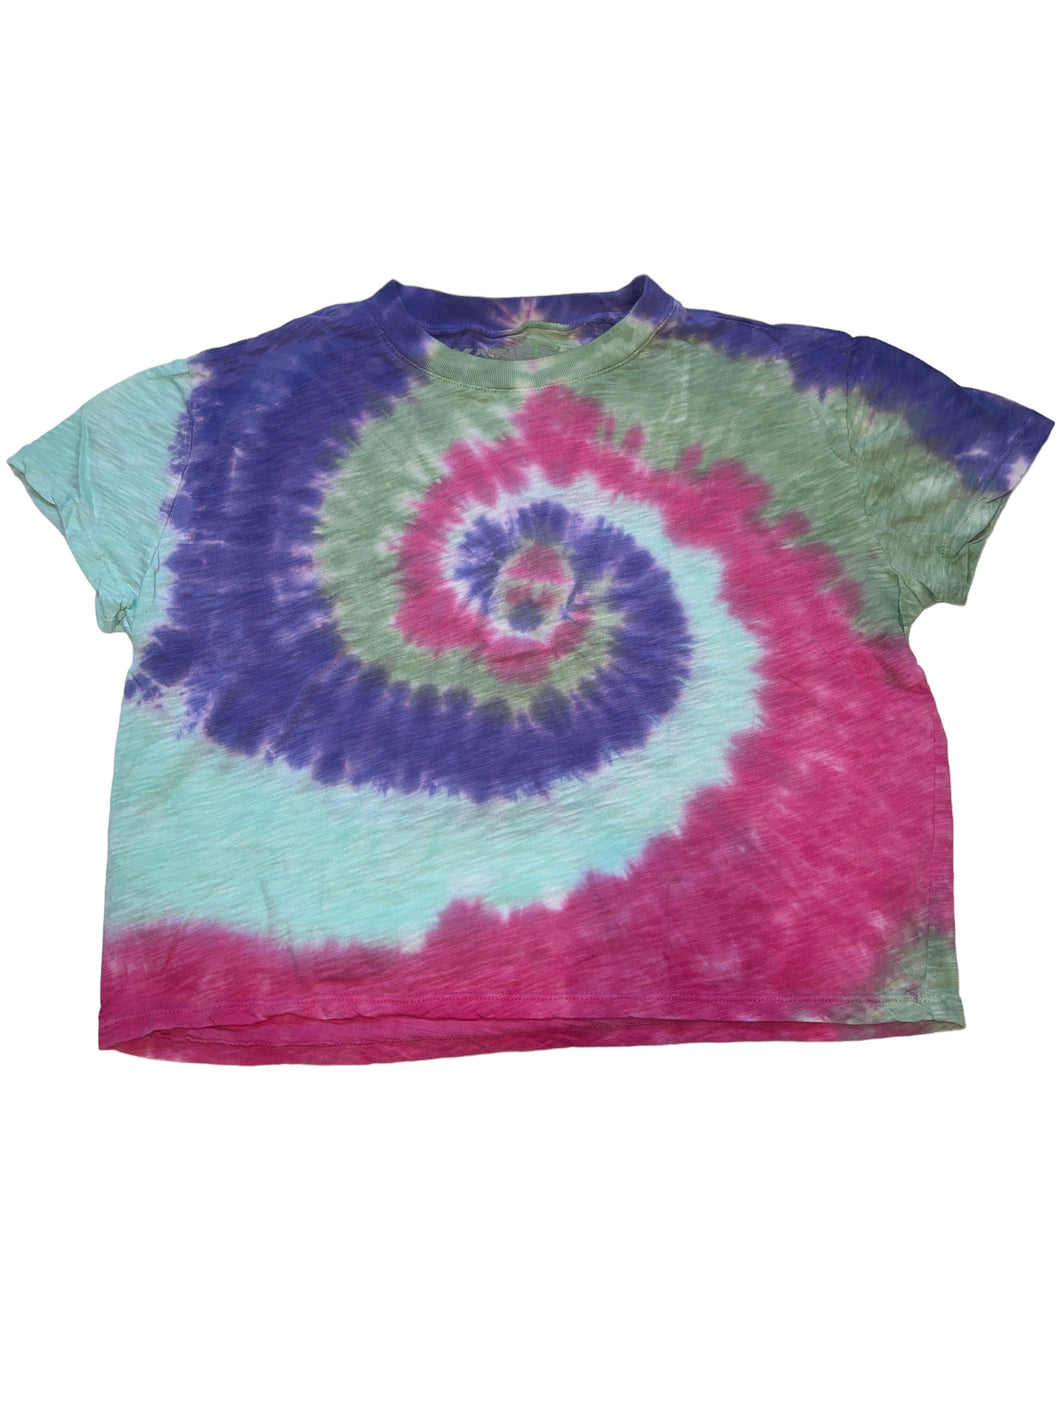 Katie J NYC girls cropped swirl tie dye tee XL(14)